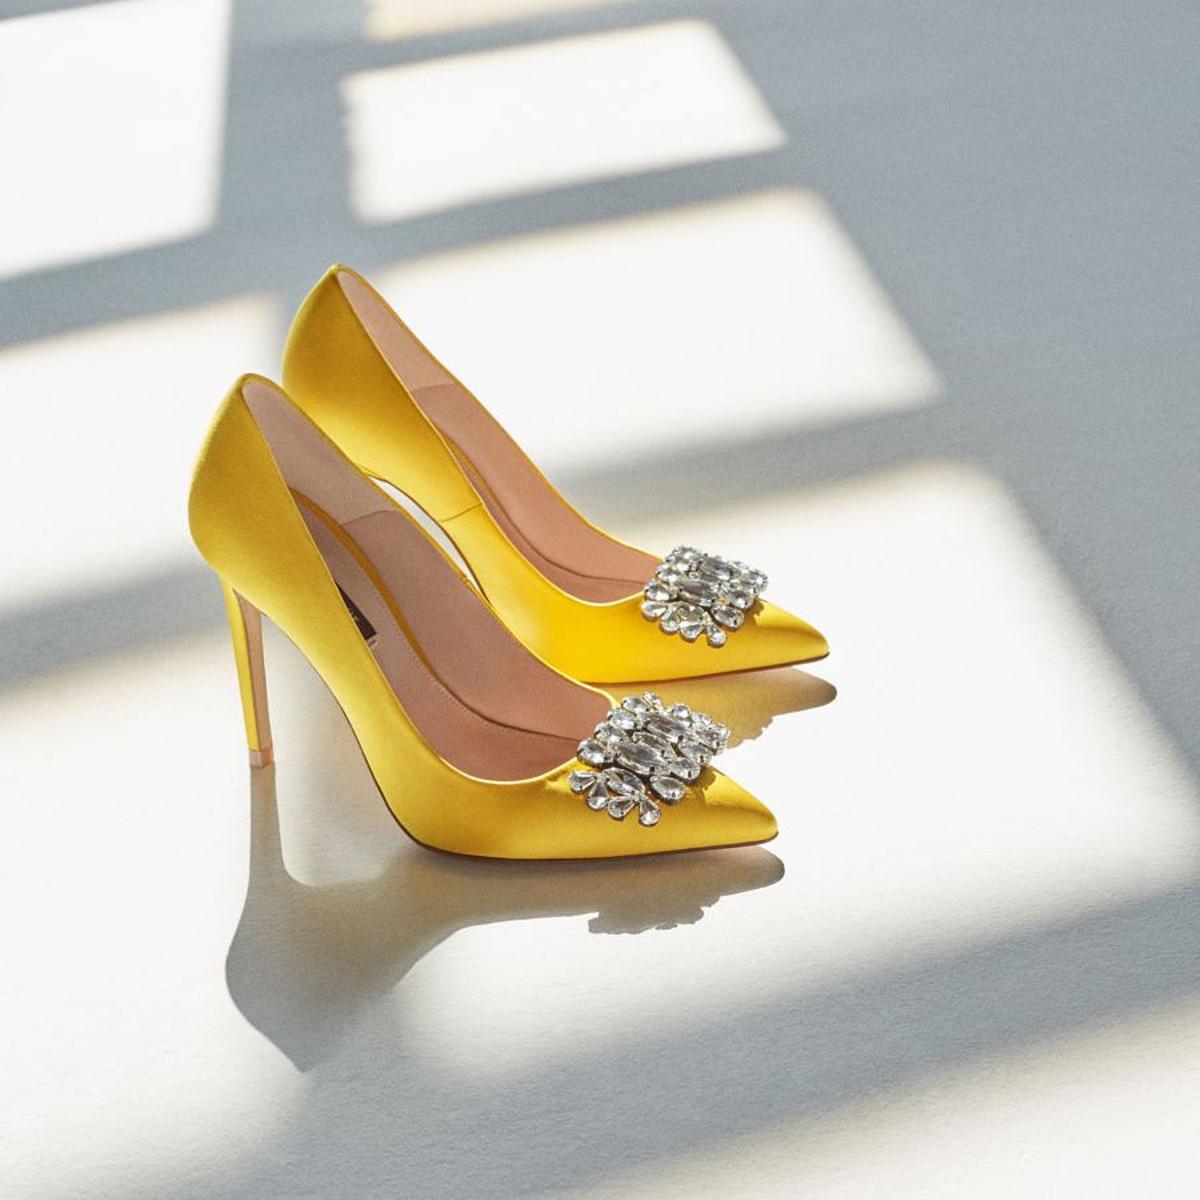 Zapatos de invitada: salones joya amarillos